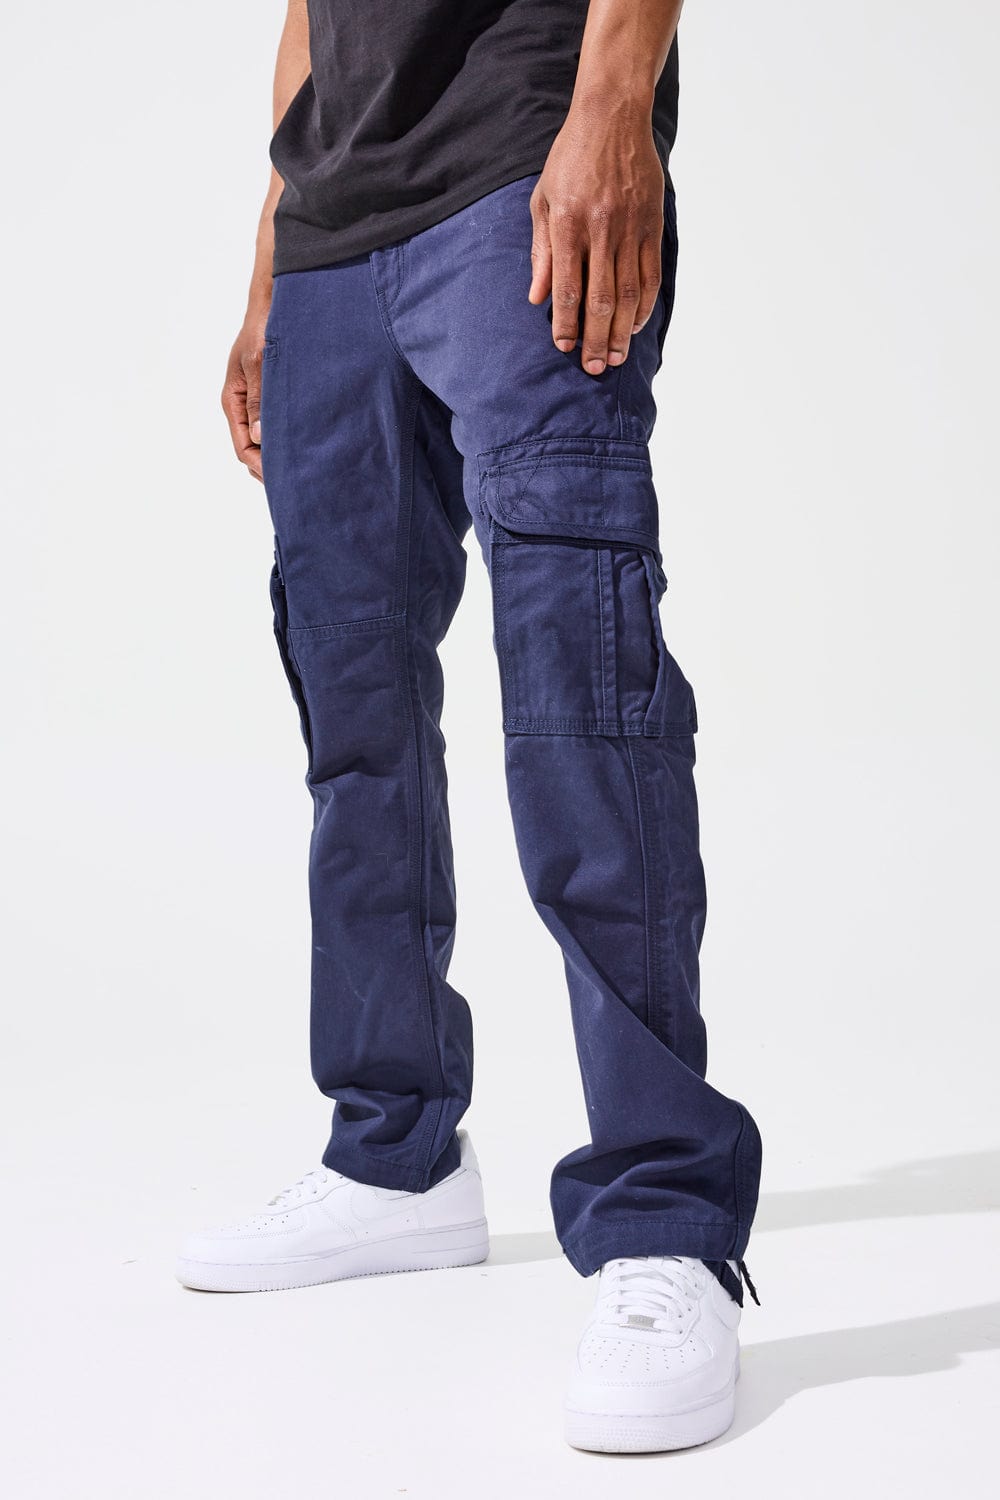 Xavier - OG Cargo Pants (Navy)